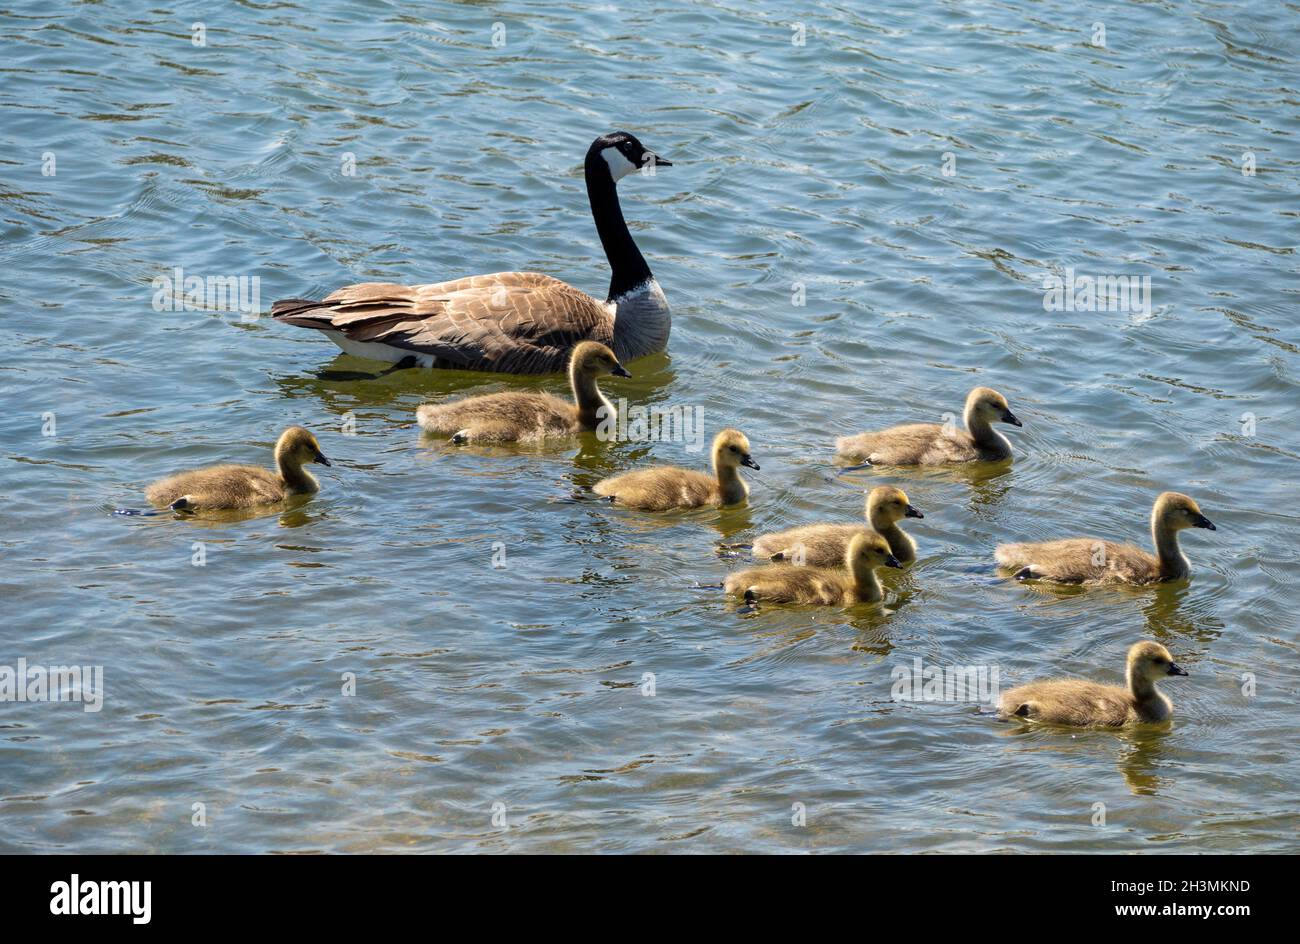 Supervisione degli adulti: Canada Goose e godings: Un adulto Canada Goose scorts una famiglia di 8 oche giovani su una nuotata in un laghetto parco. Foto Stock